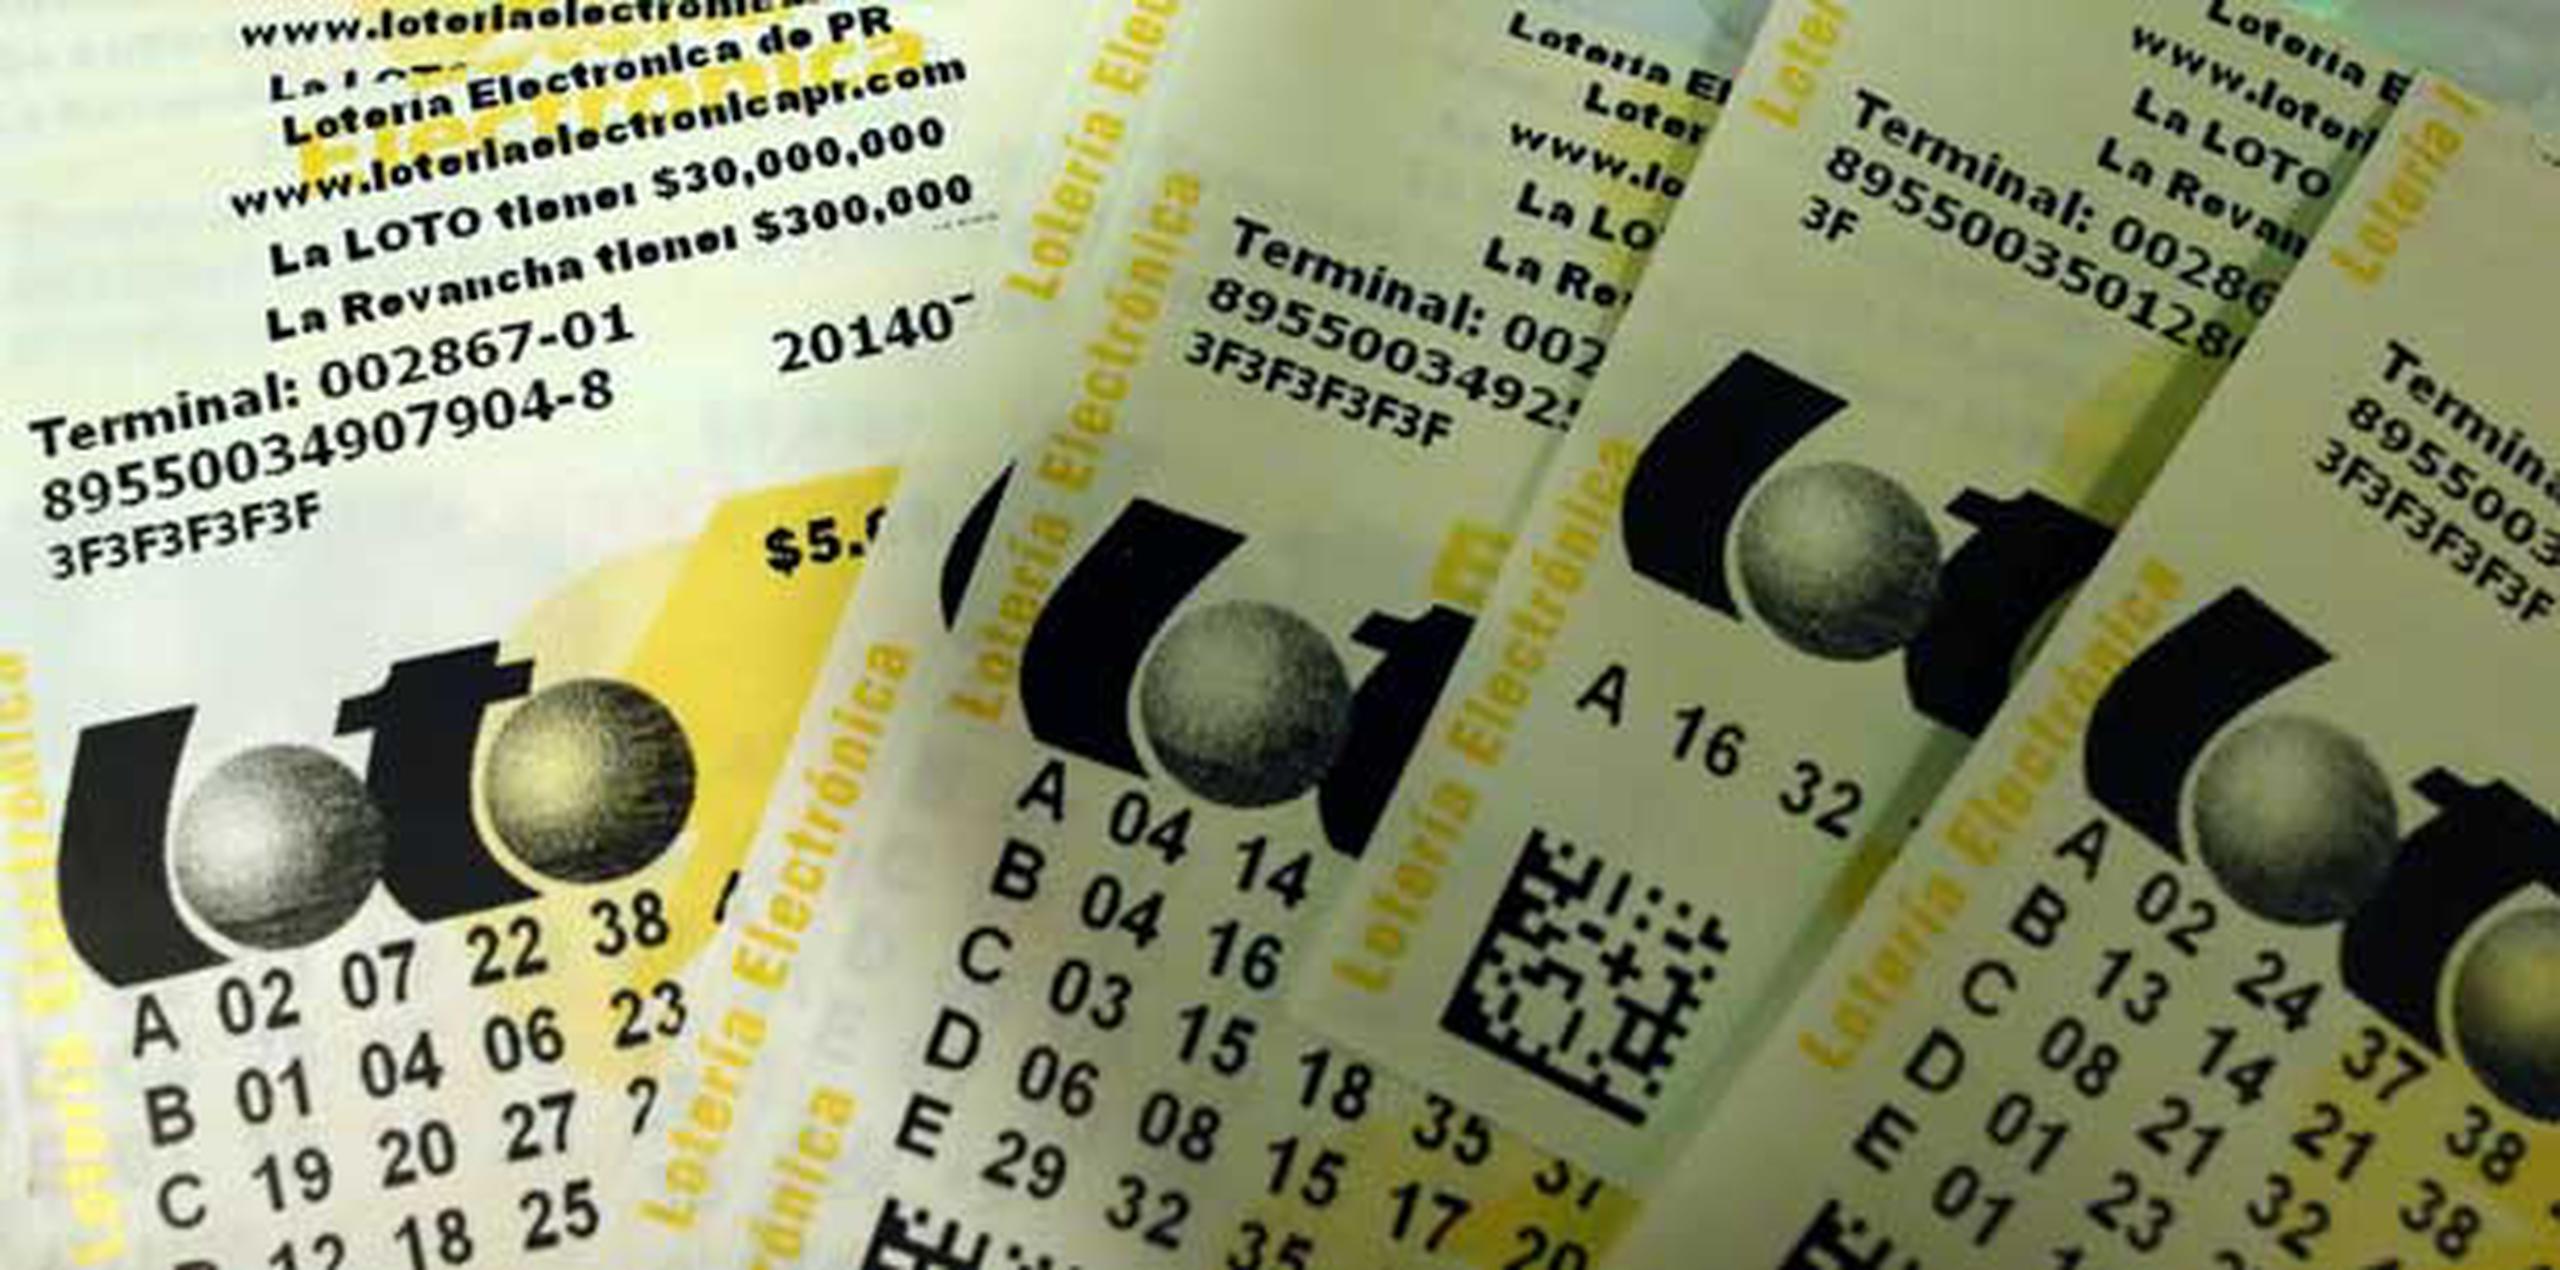 Sepa que si se pega y opta por recibir el premio en las anualidades de 20 años que la Lotería Electrónica le garantiza, recibiría pagos de $1,280,000. (Archivo)